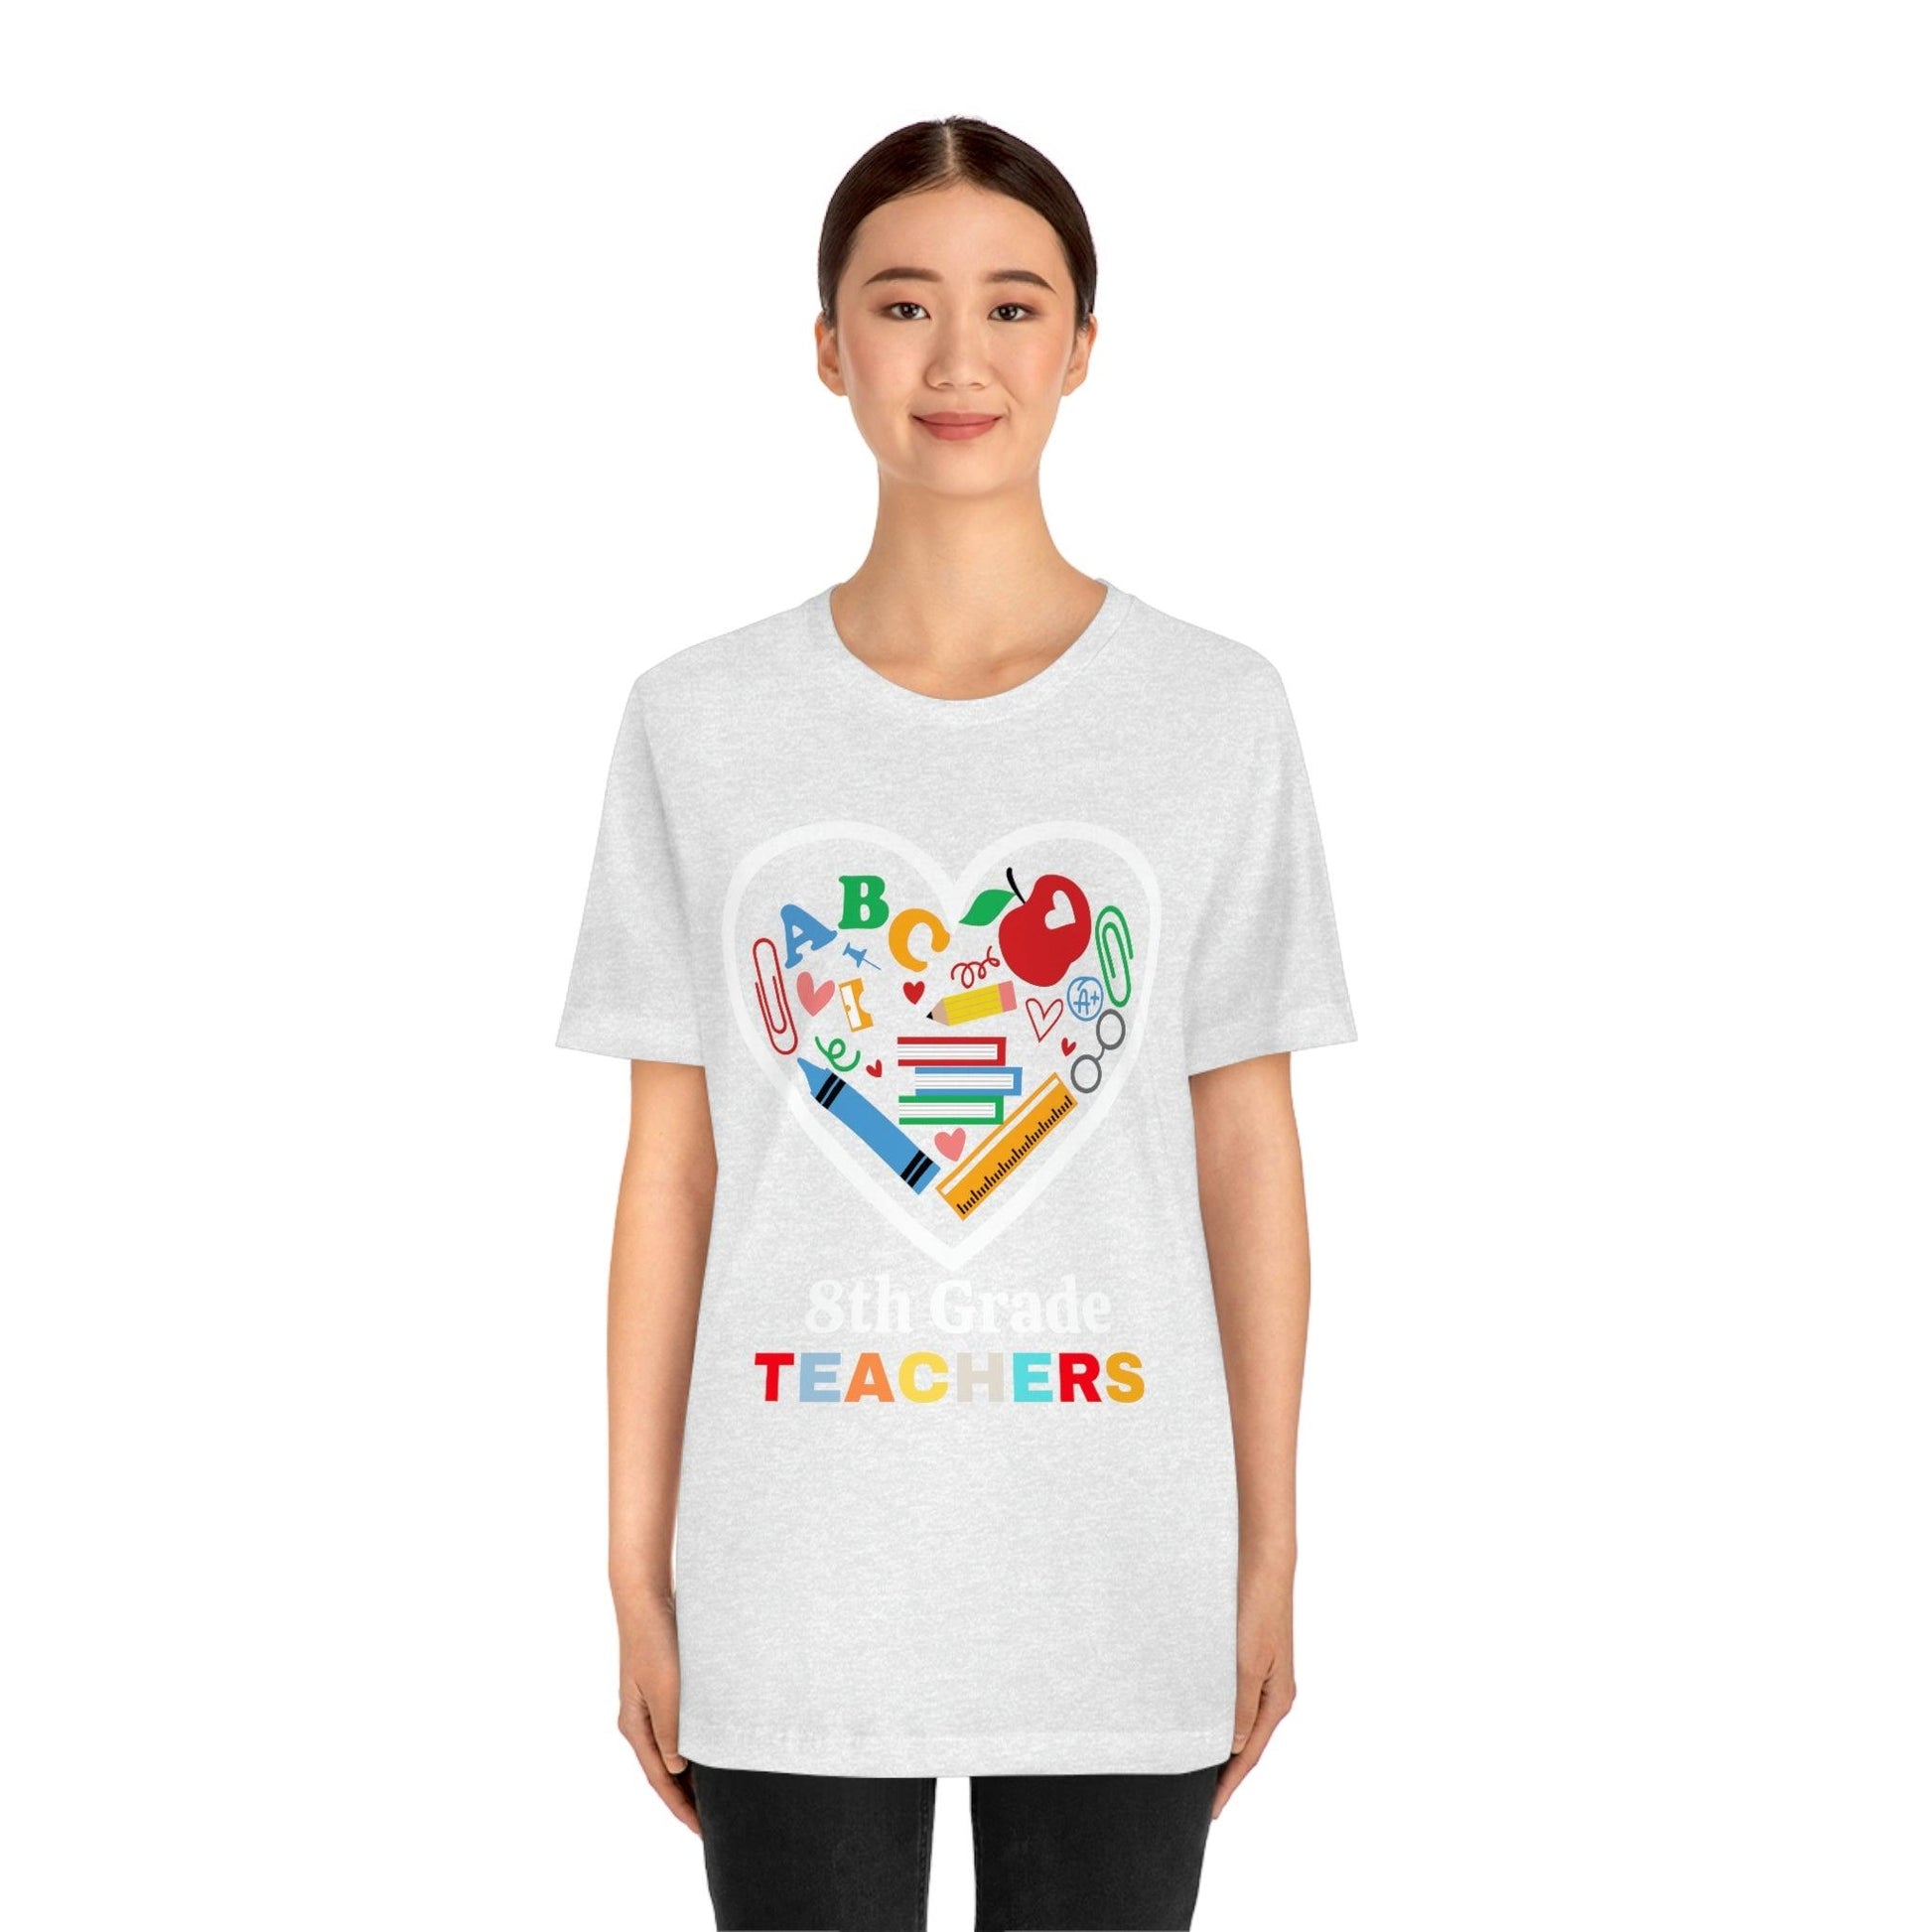 Love 8th Grade Teacher Shirt - Teacher Appreciation Shirt - Gift for Teachers - 8th Grade shirt - Giftsmojo